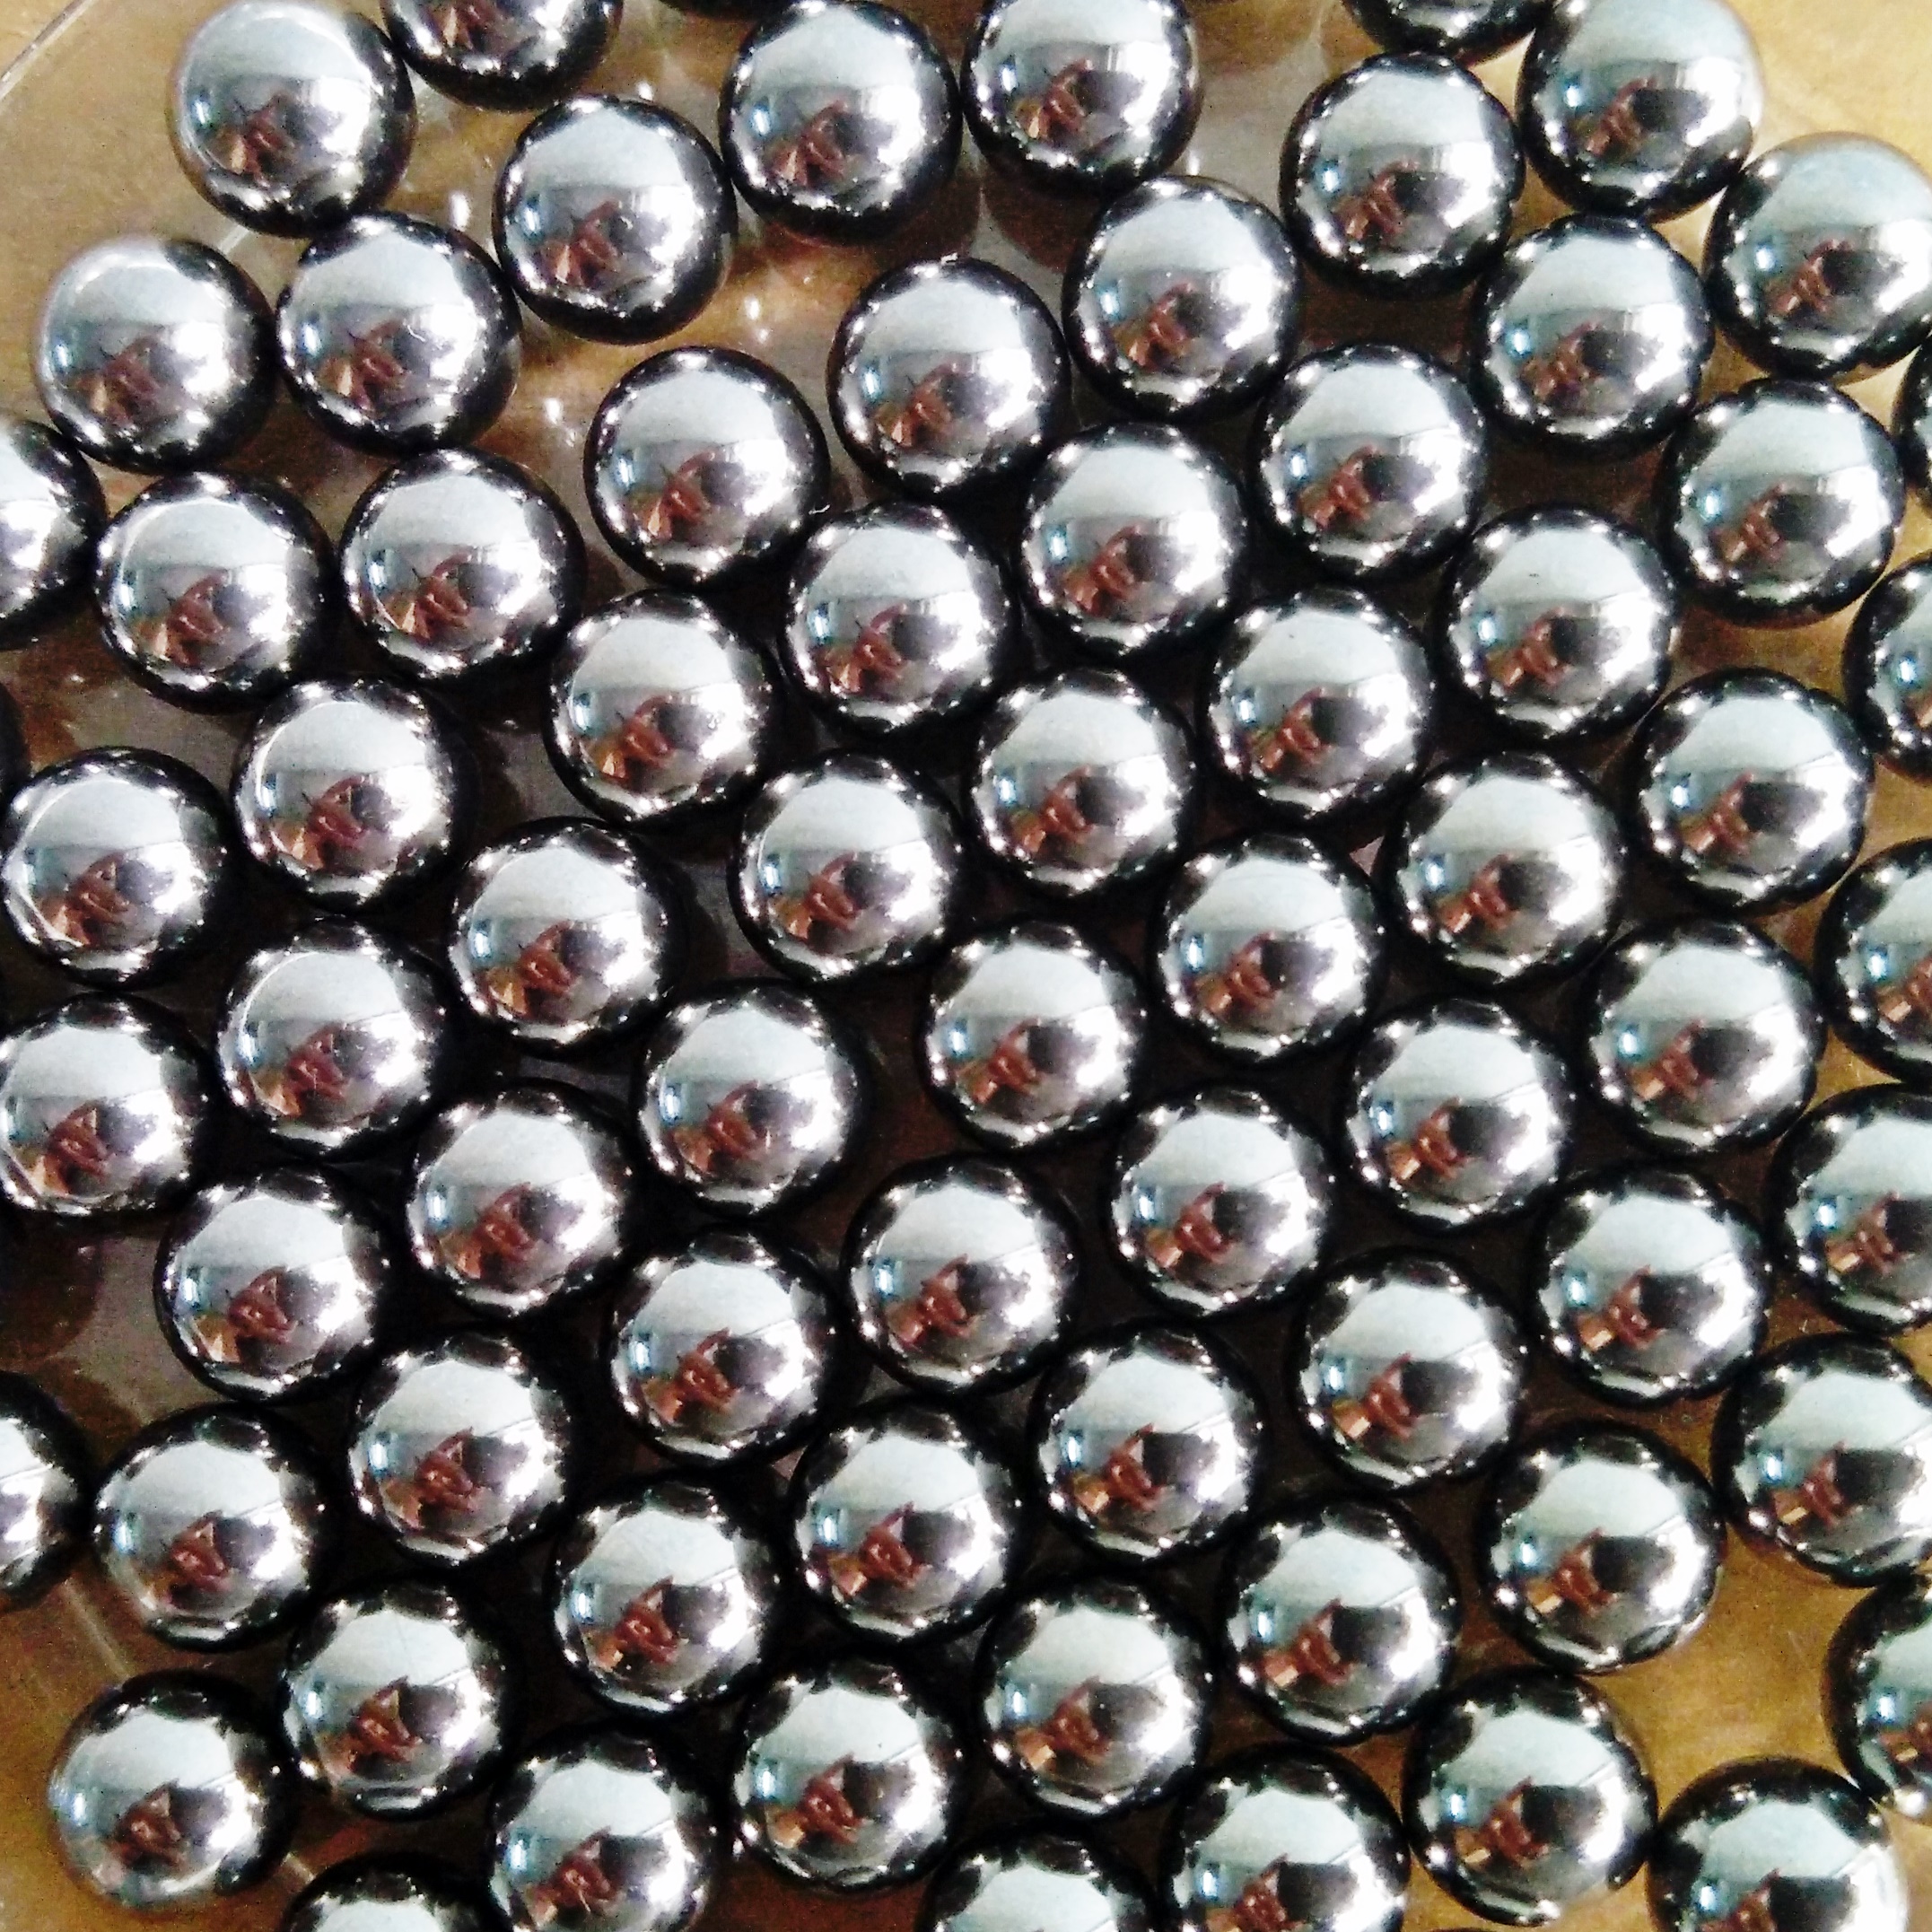 Tangeseiki Bearing Balls 1/4" (Grade 100 )